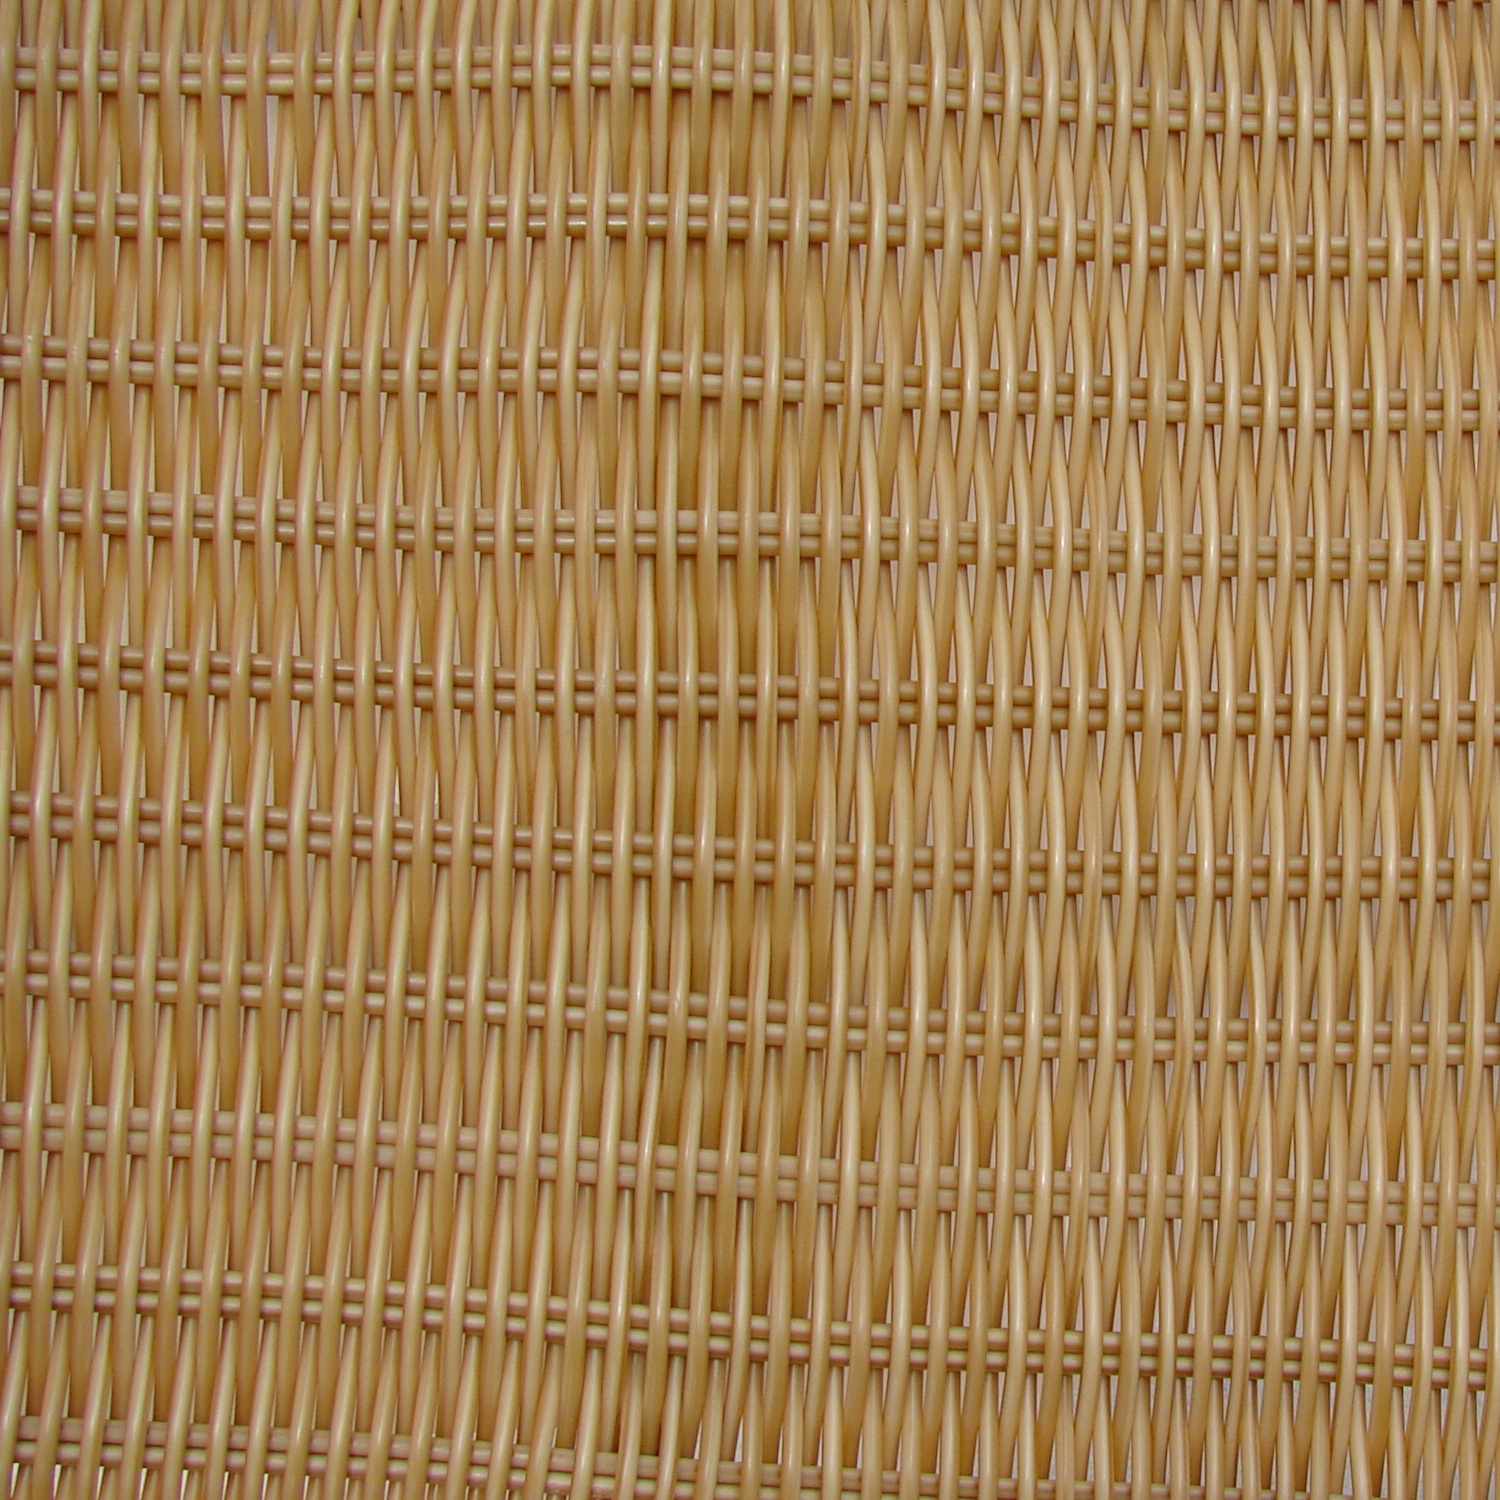 Tan Wicker Wooden Texture